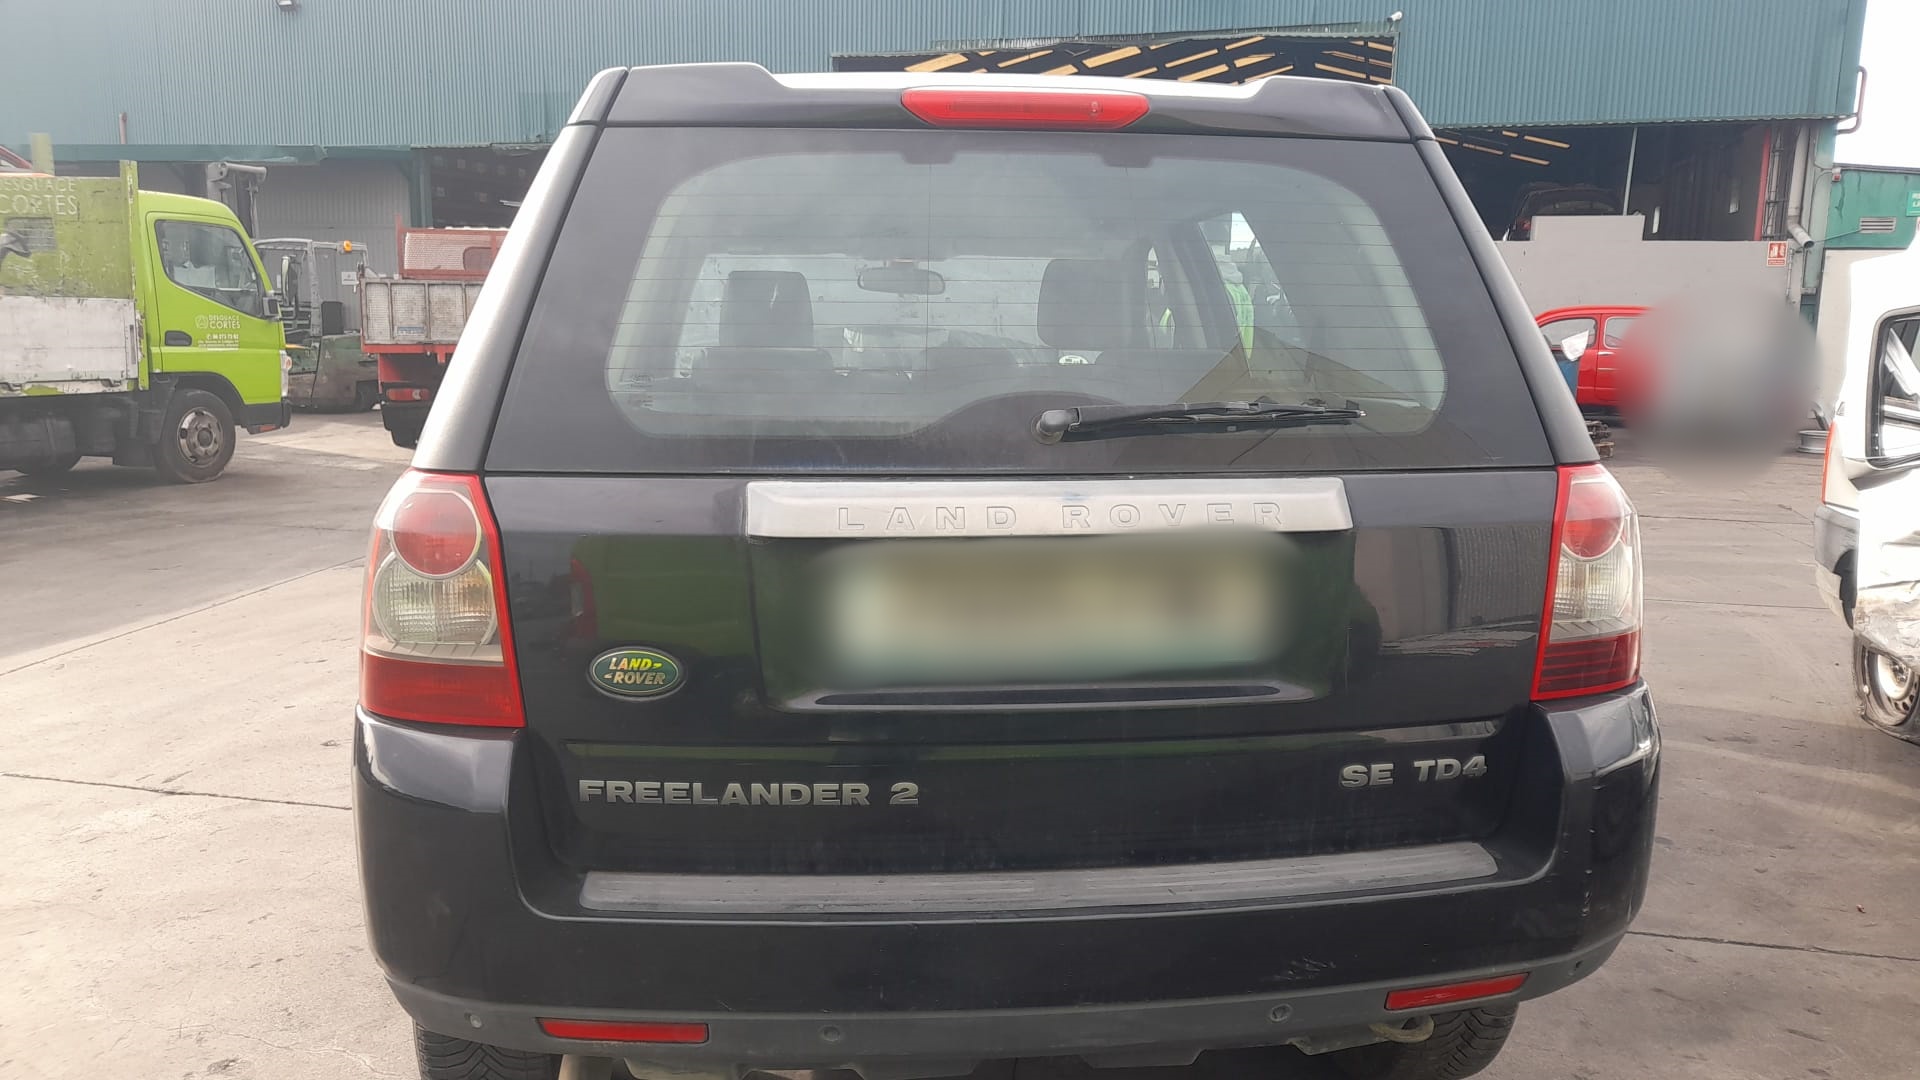 LAND ROVER Freelander 2 generation (2006-2015) Starteris LR007373 25189008